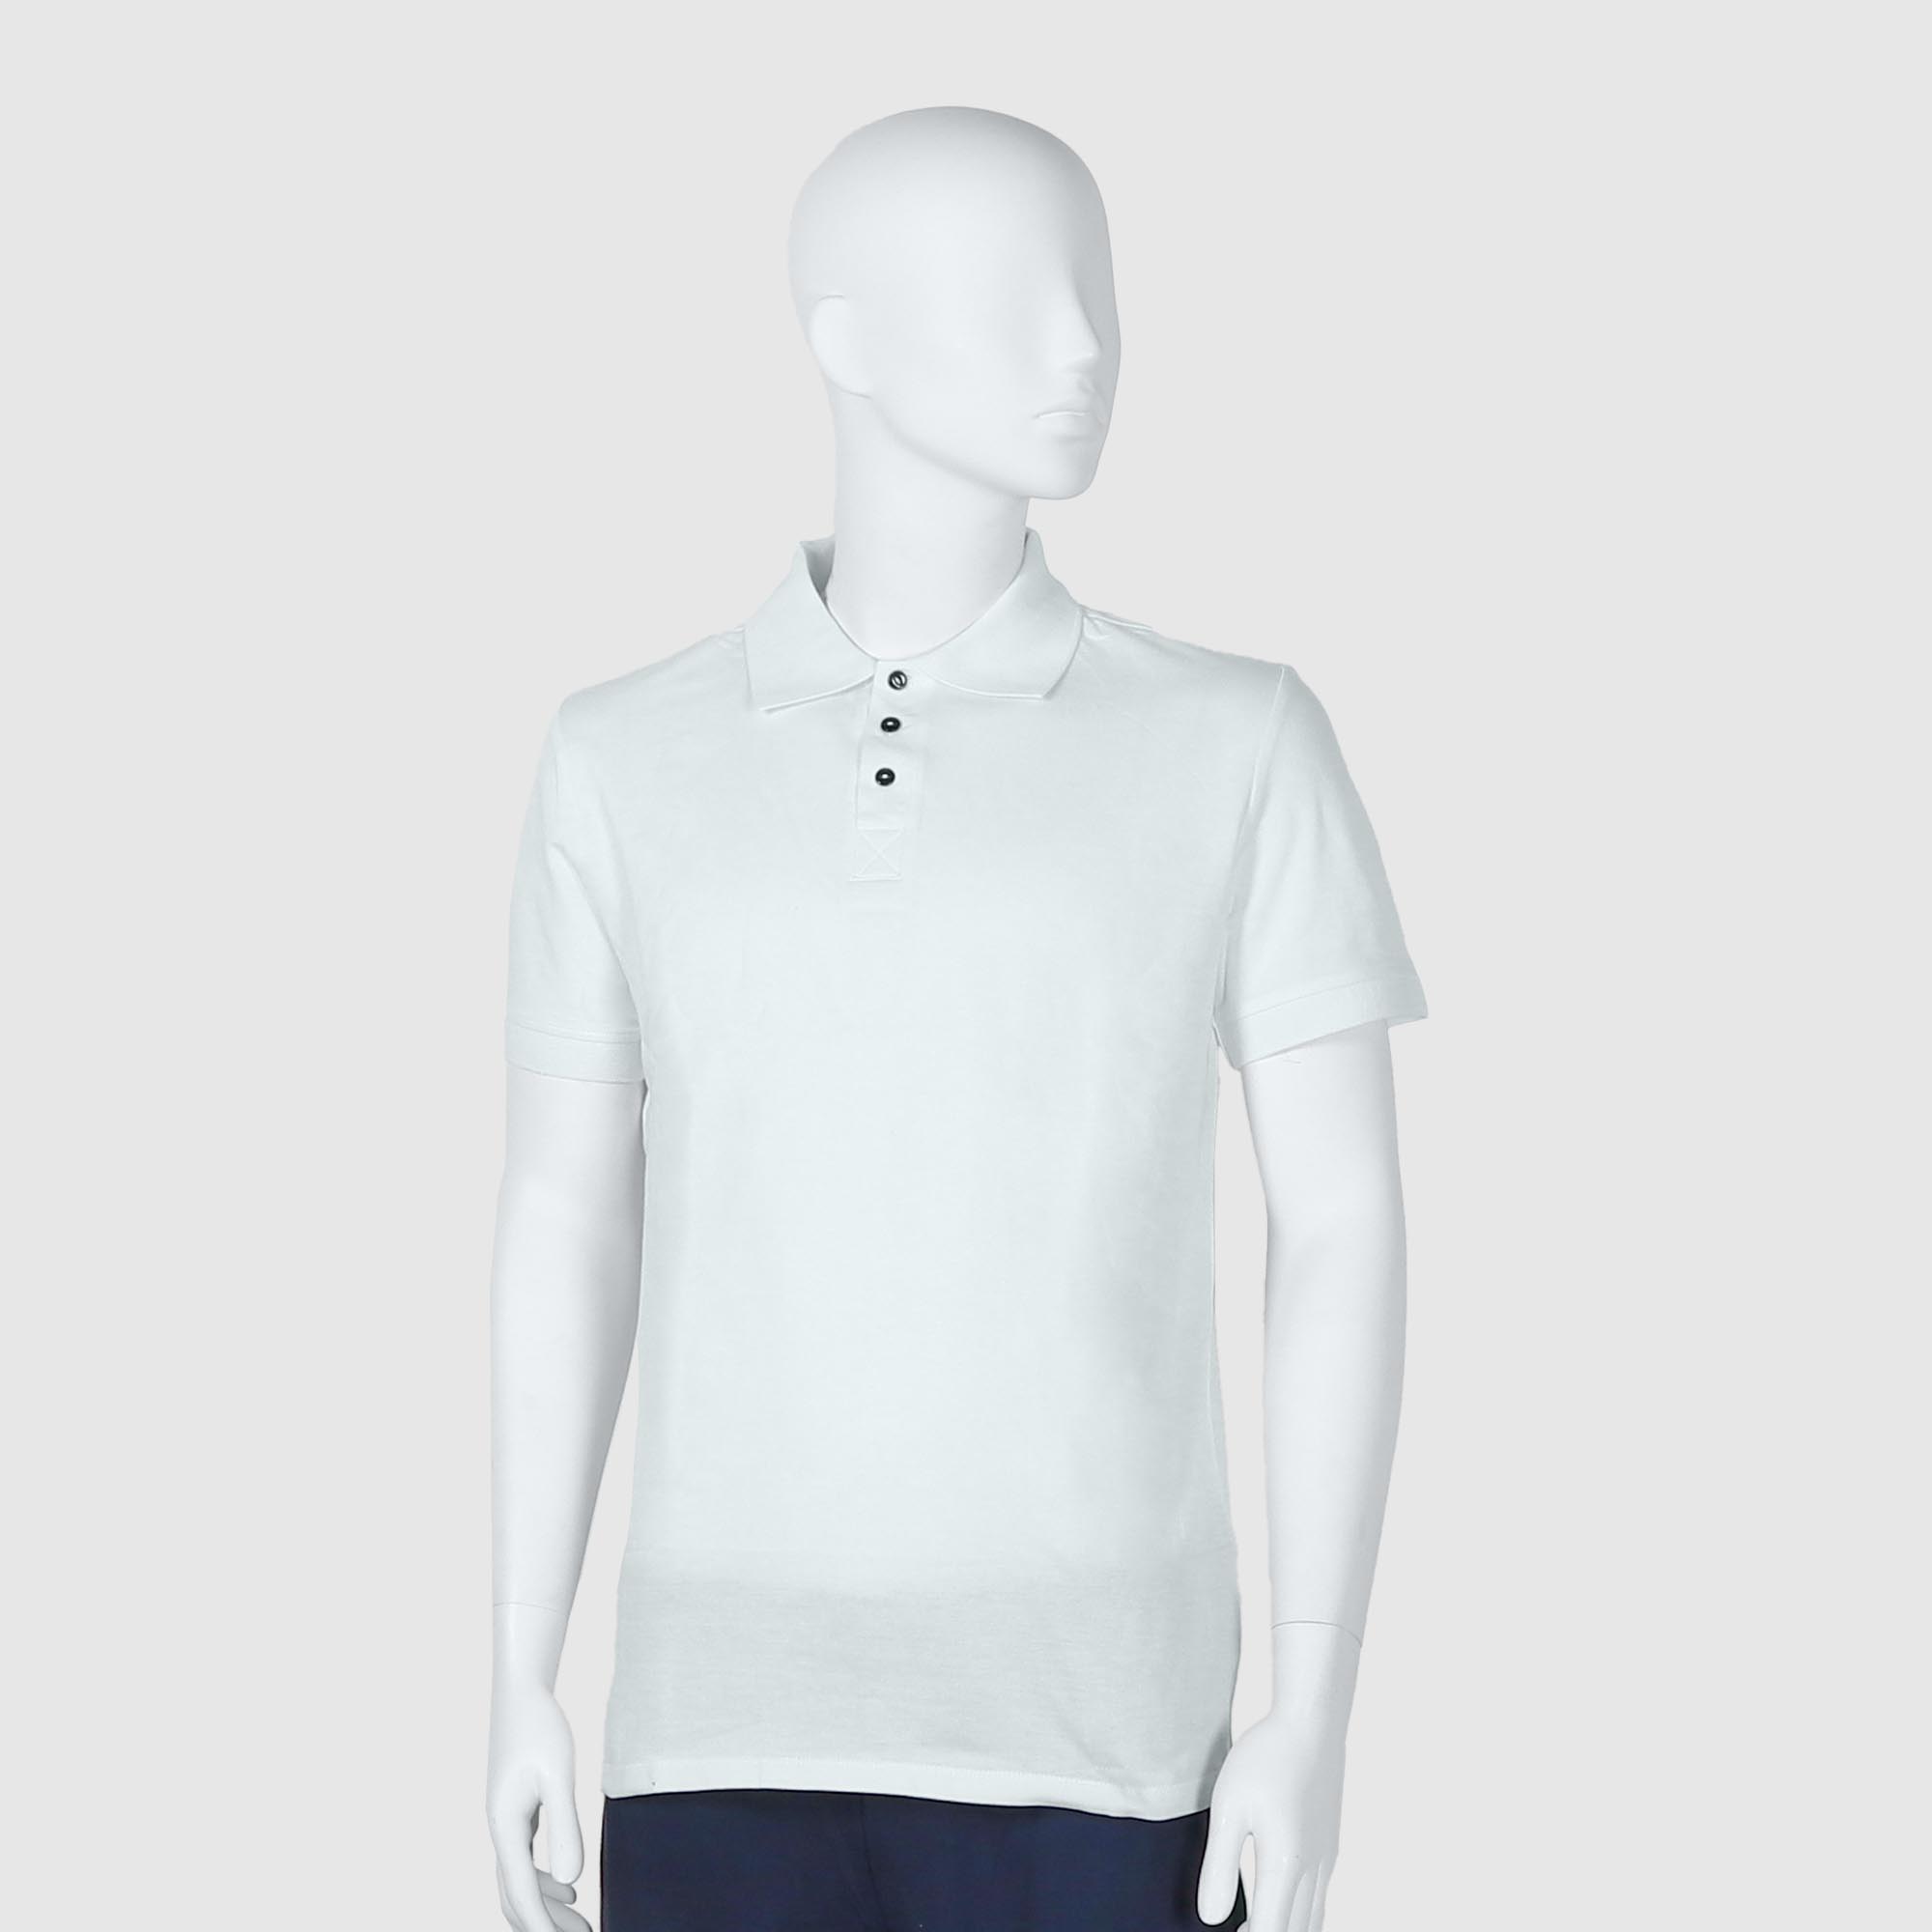 Мужская футболка-поло Diva Teks белая (DTD-07), цвет белый, размер 54-56 - фото 1